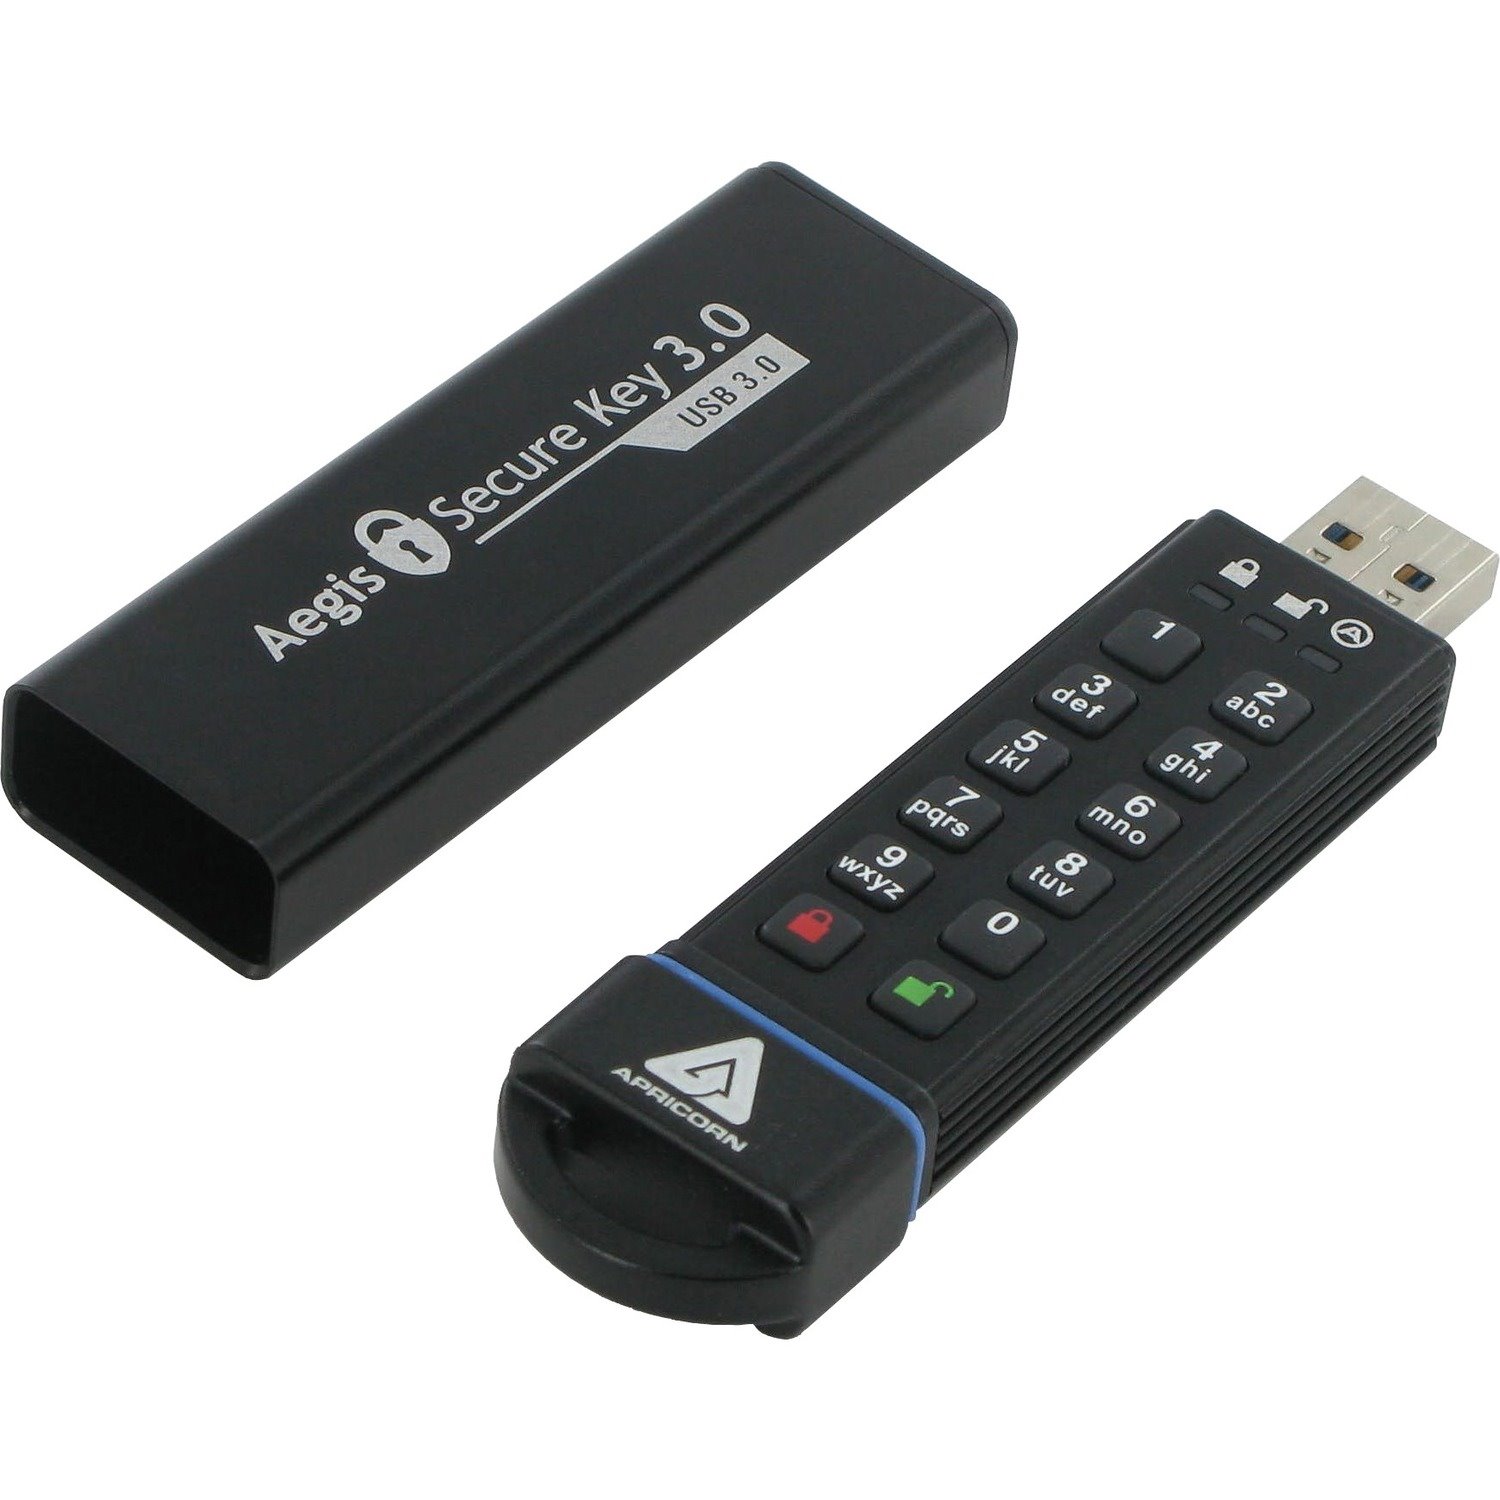 Apricorn Aegis Secure Key 3.0 480 GB USB 3.0 Flash Drive - 256-bit AES - TAA Compliant